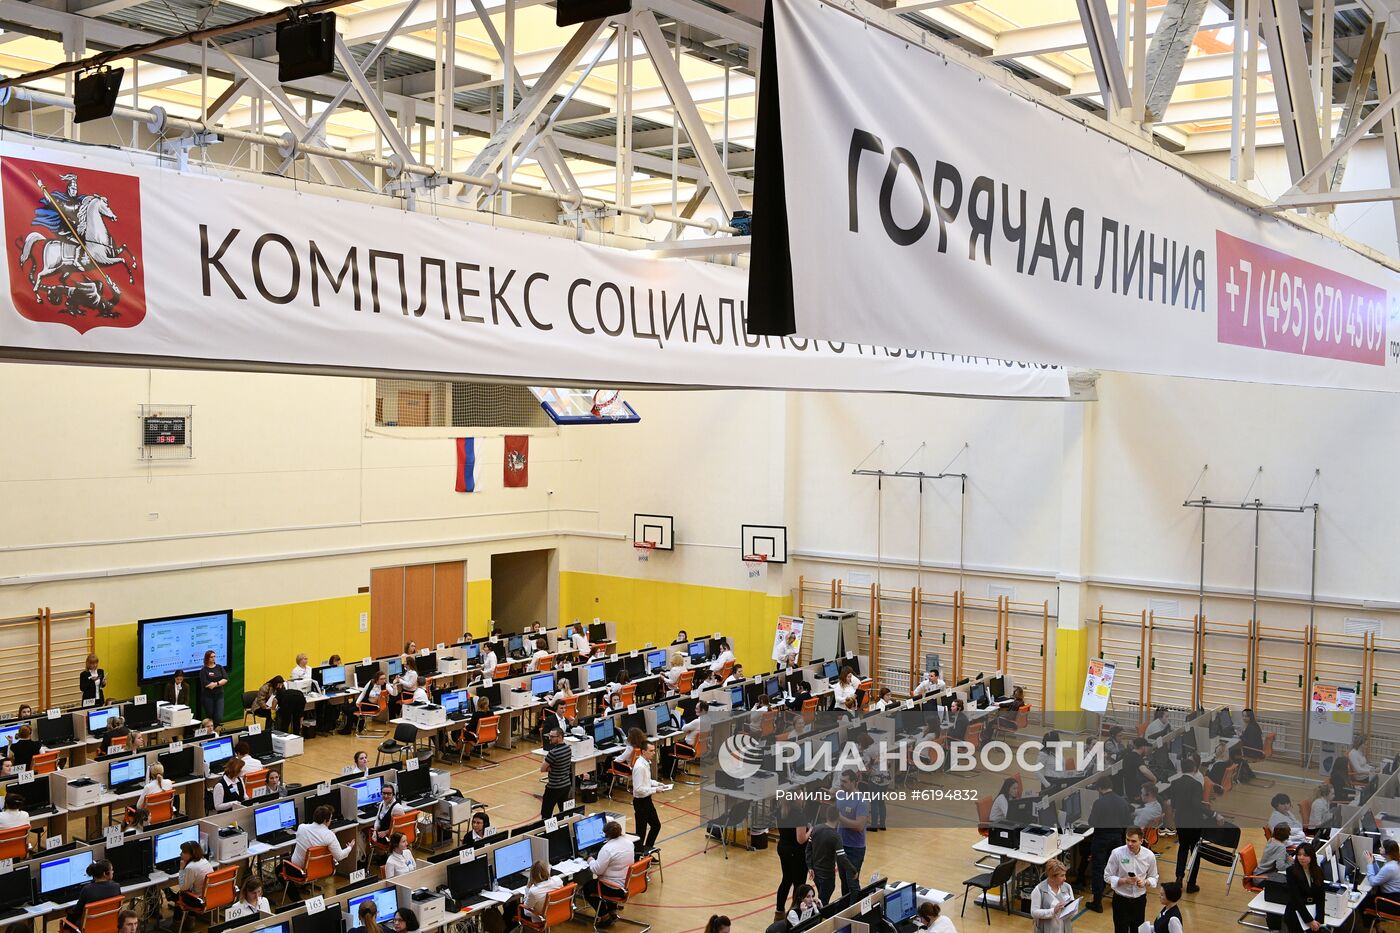 Колл-центр по вопросам коронавируса в Москве